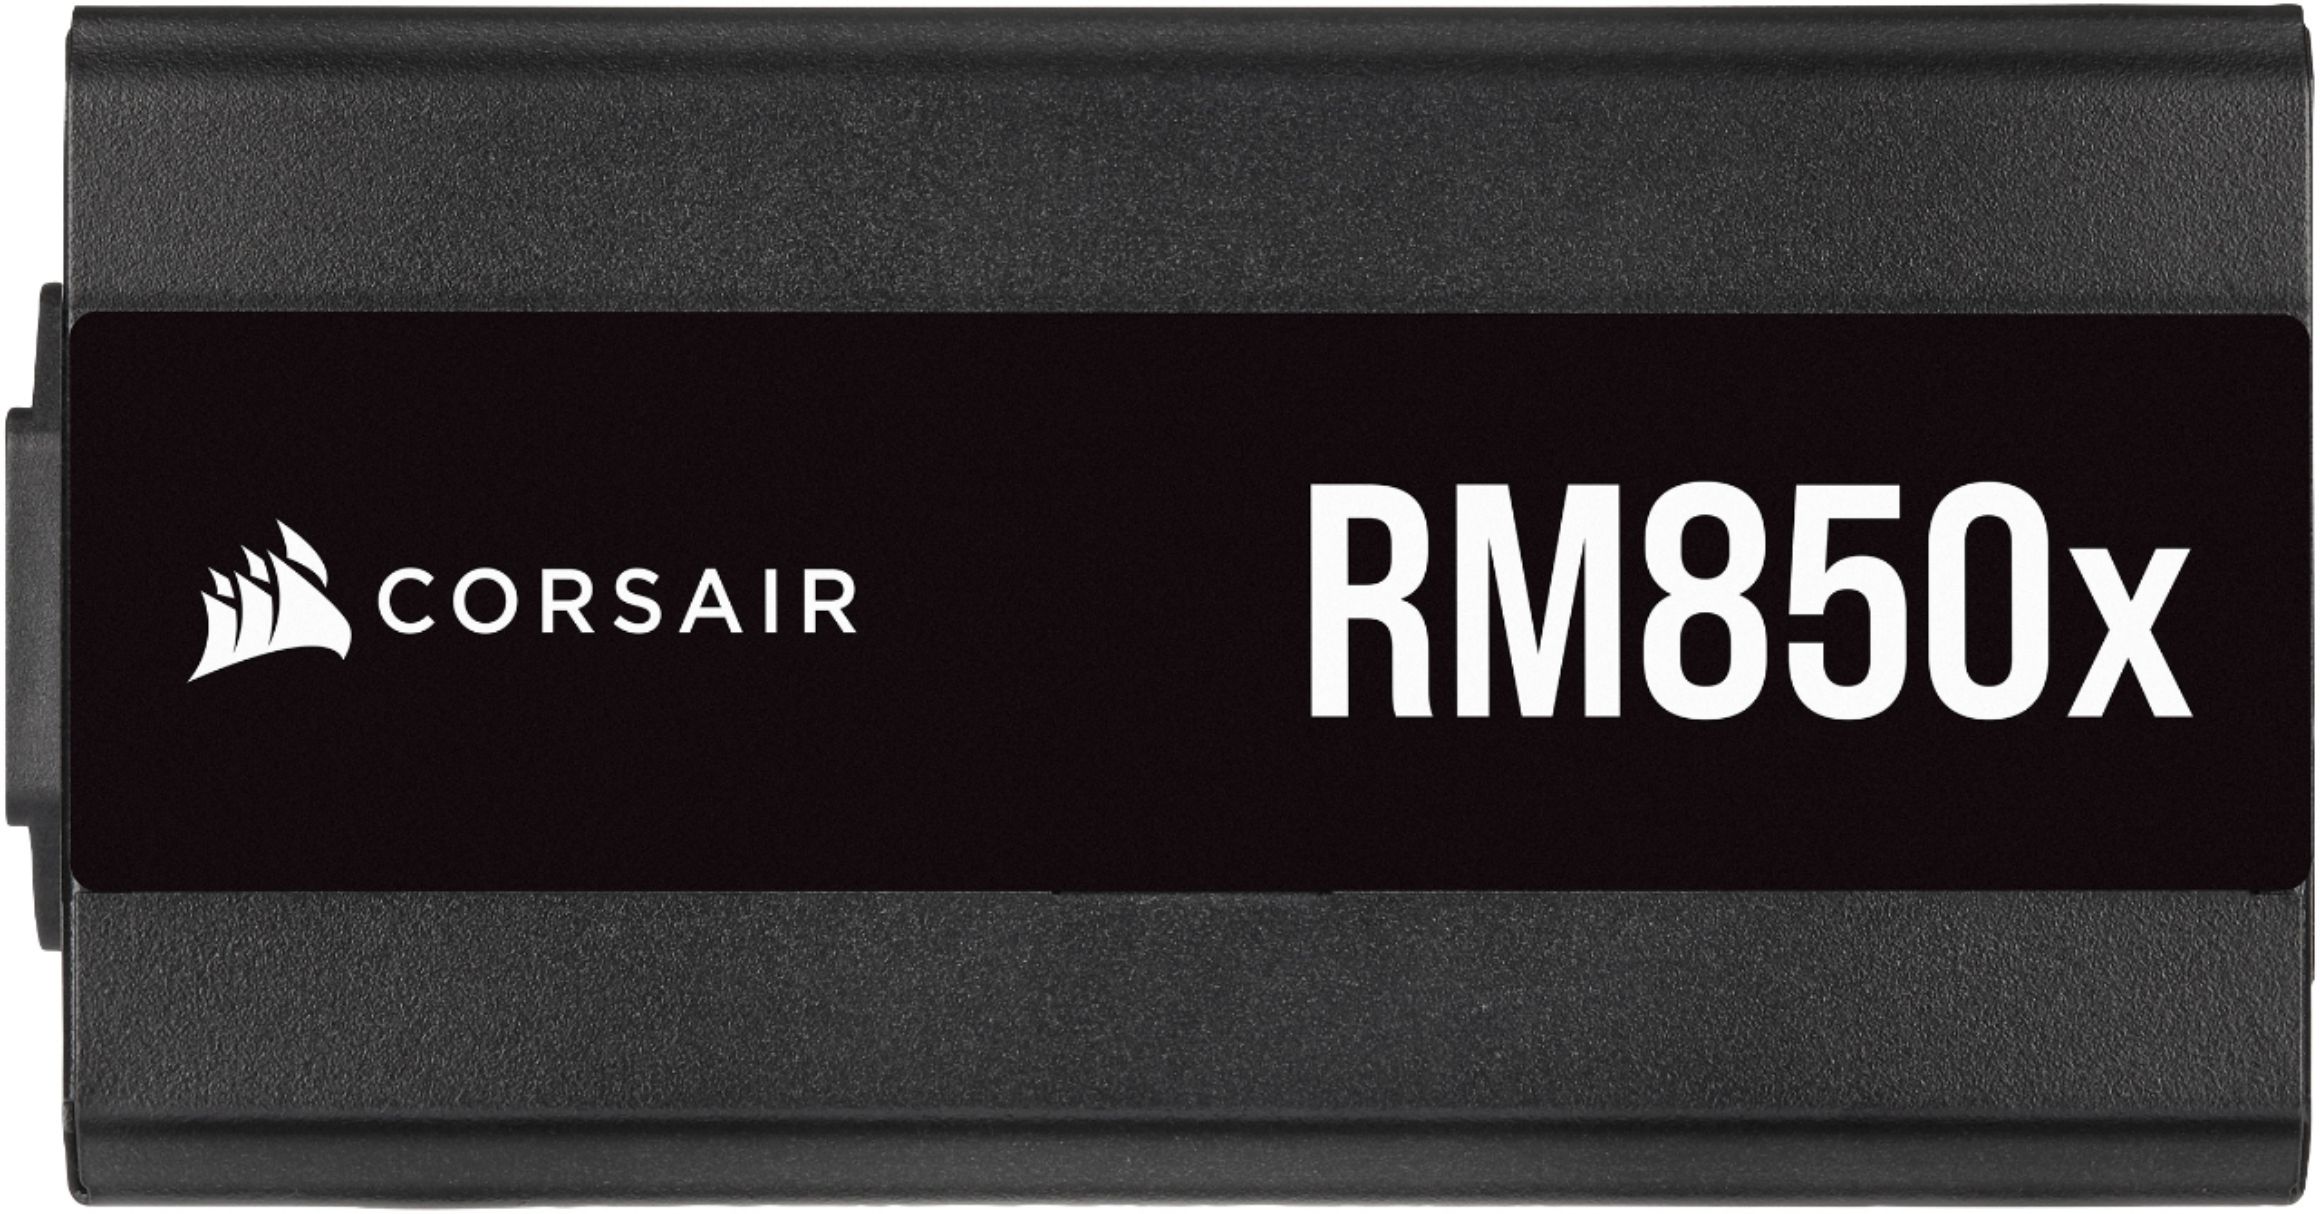  CORSAIR RMX Series, RM850x, 850 Watt, 80+ Gold Certified, Fully  Modular Power Supply : Electronics